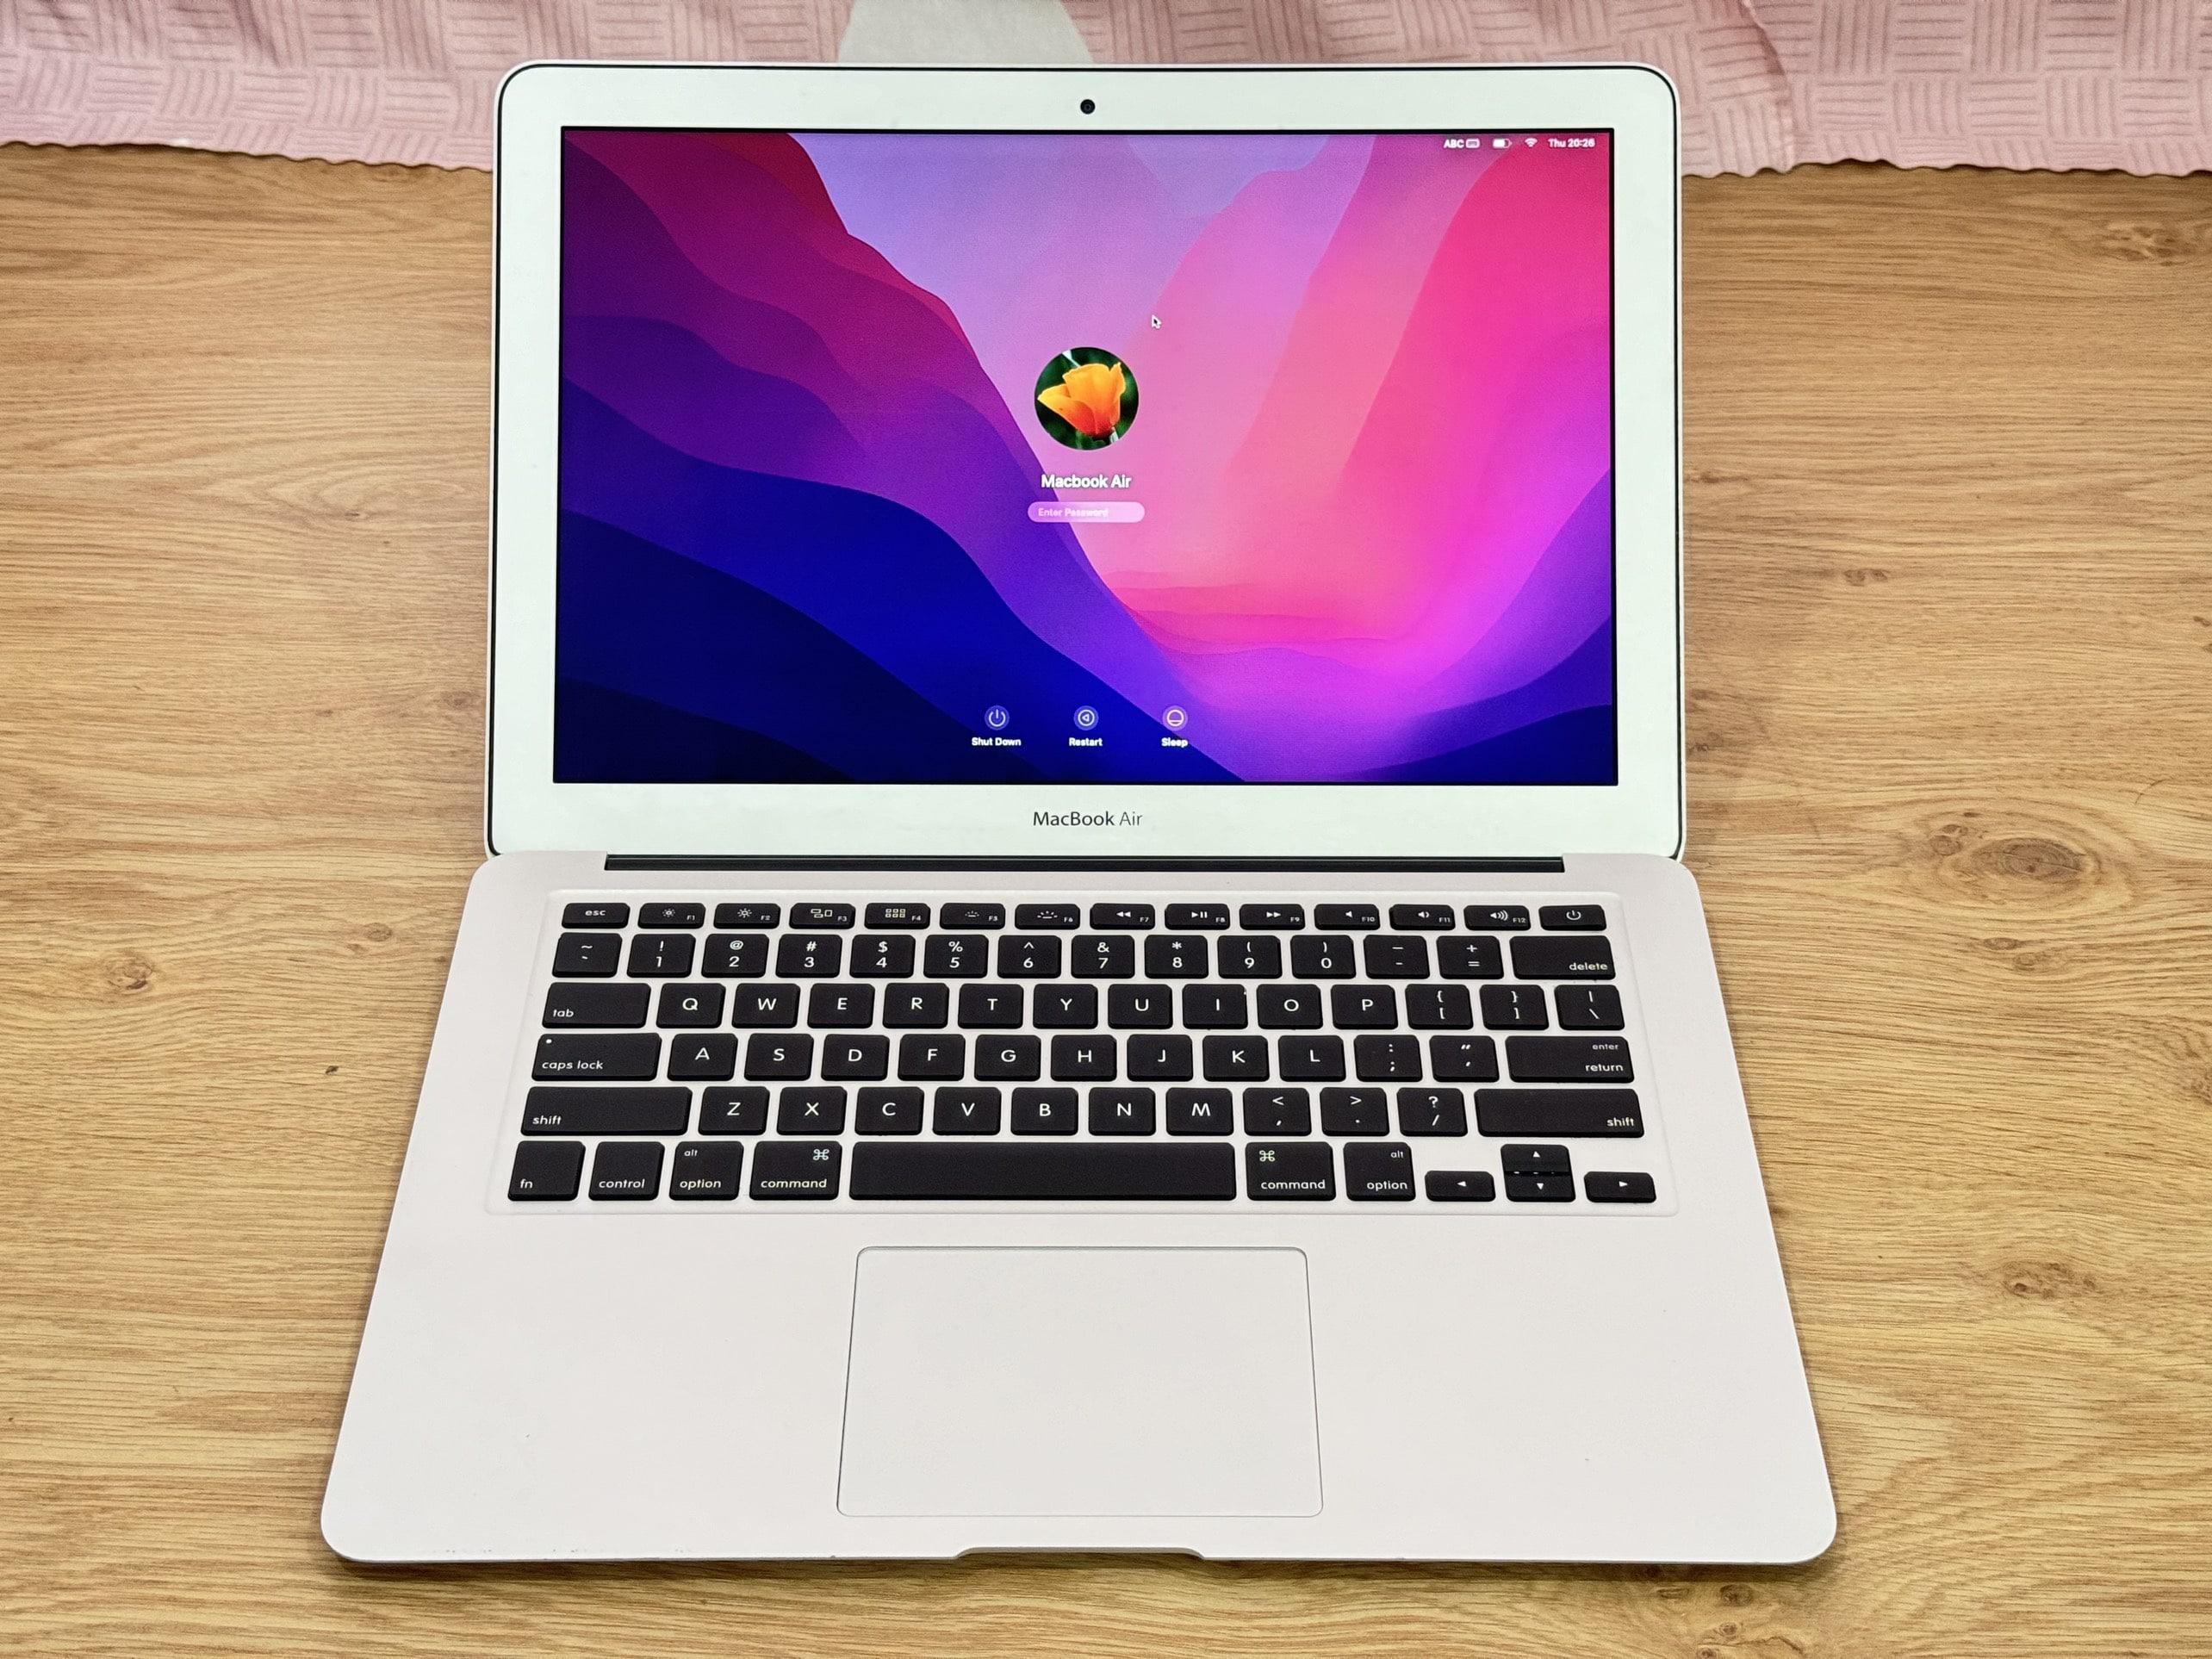 Macbook-air-2015-core-i5-ram-8gb-ssd-128gb-13